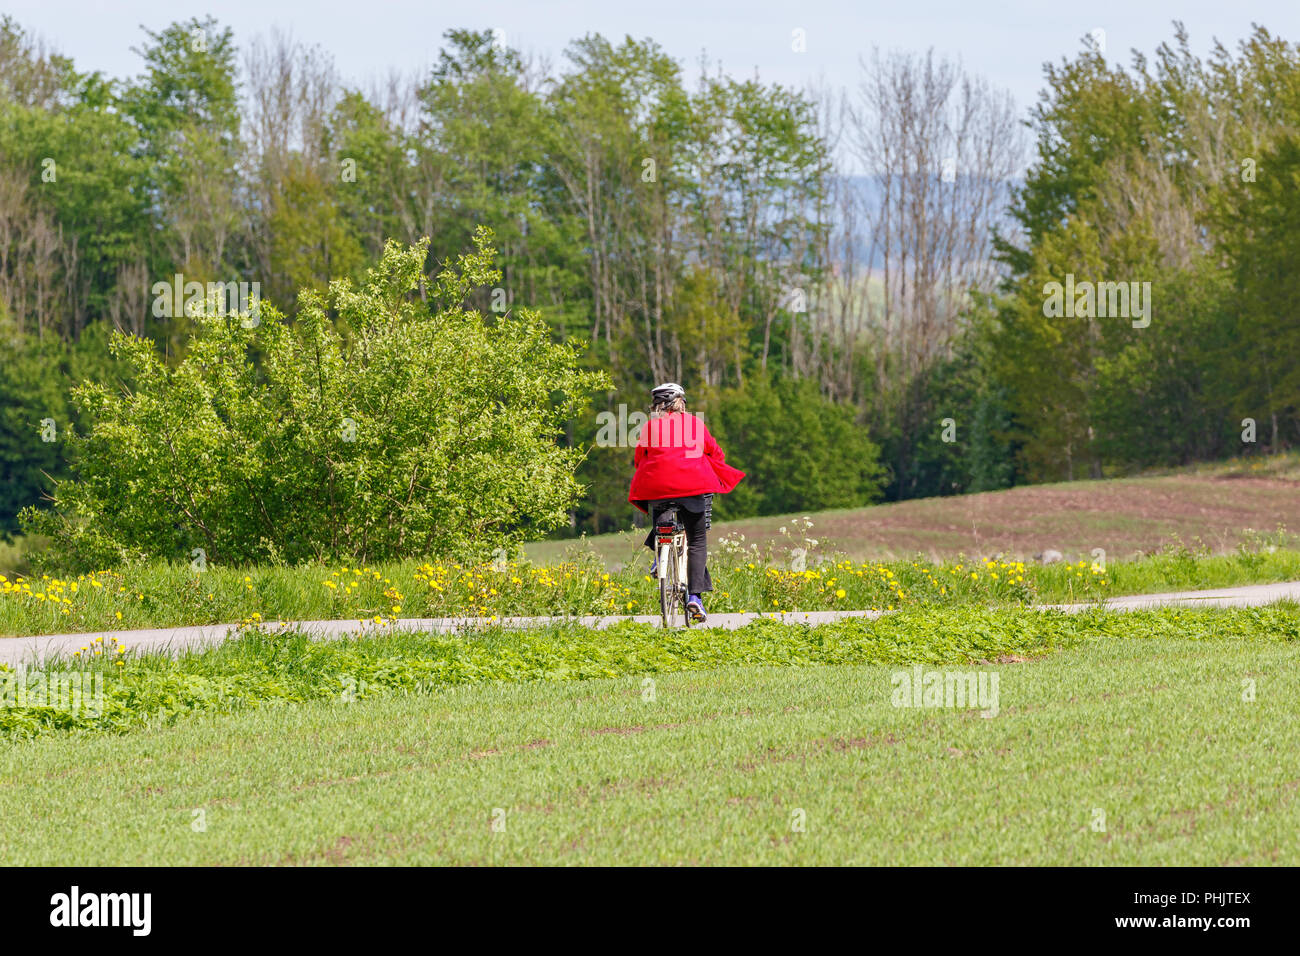 Ciclista en una carretera rural de verano Foto de stock